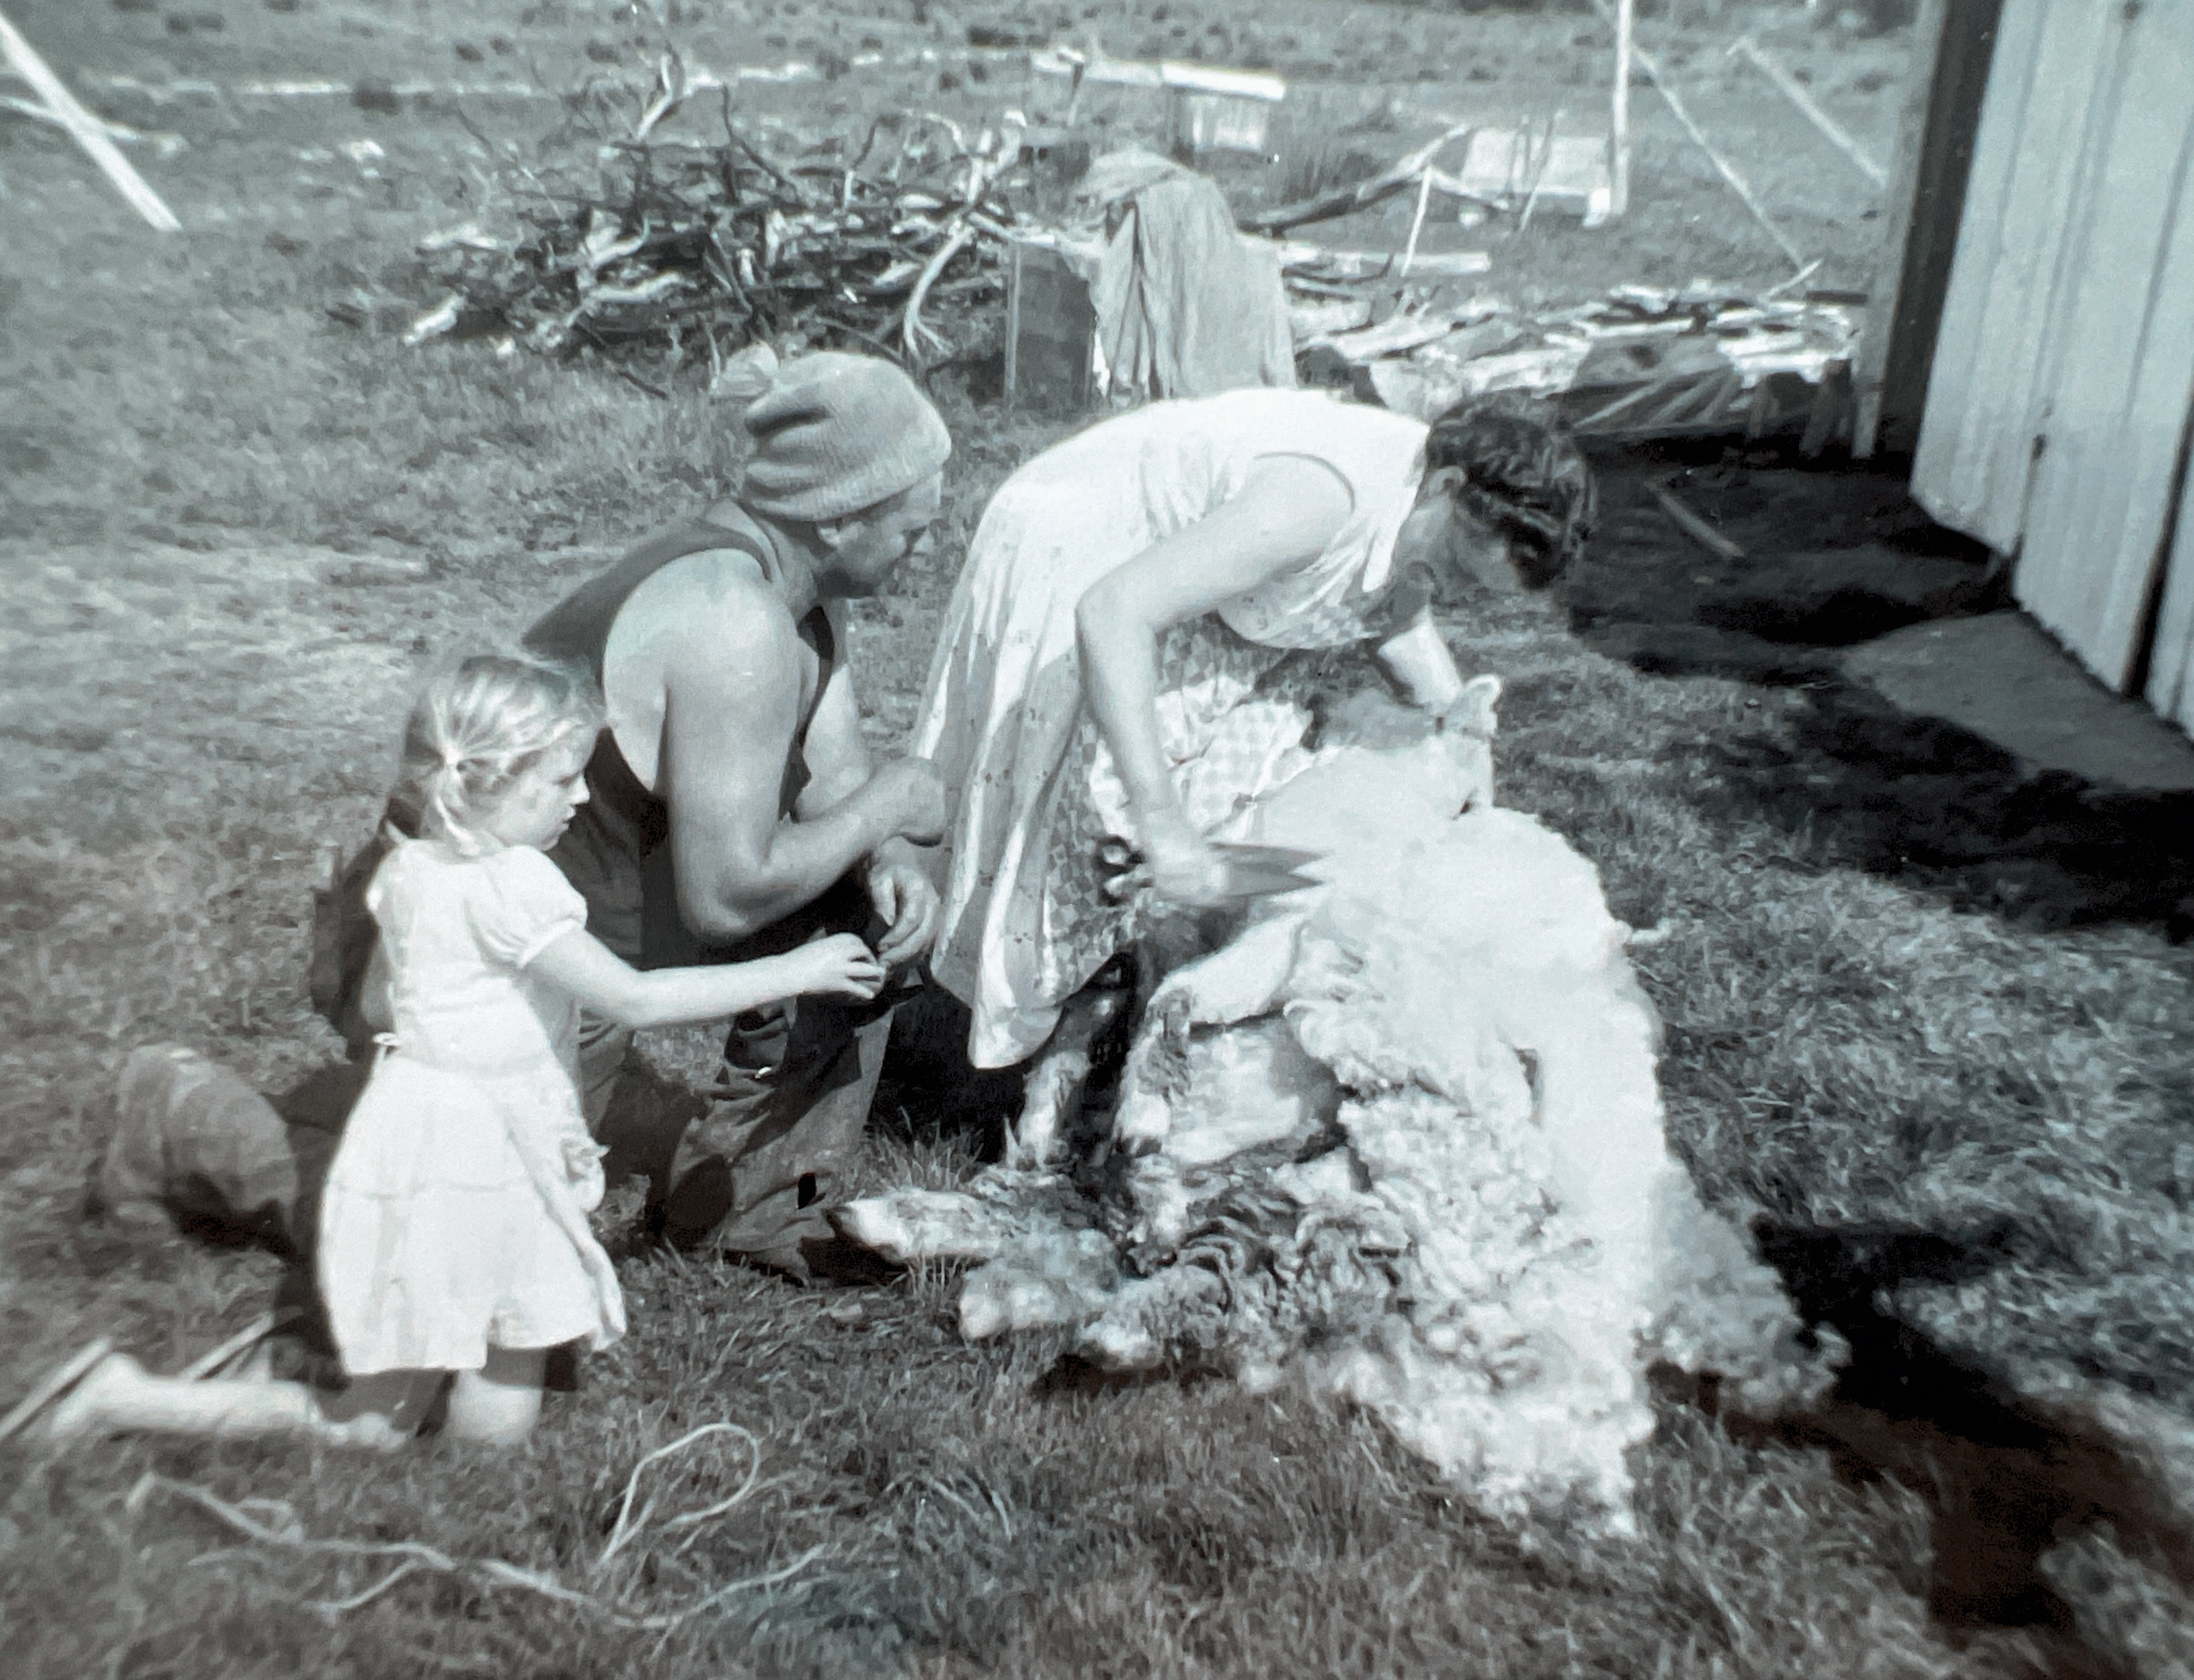 Mum shearing Peggy. Rangiriri. Me at 5 yrs old 1963